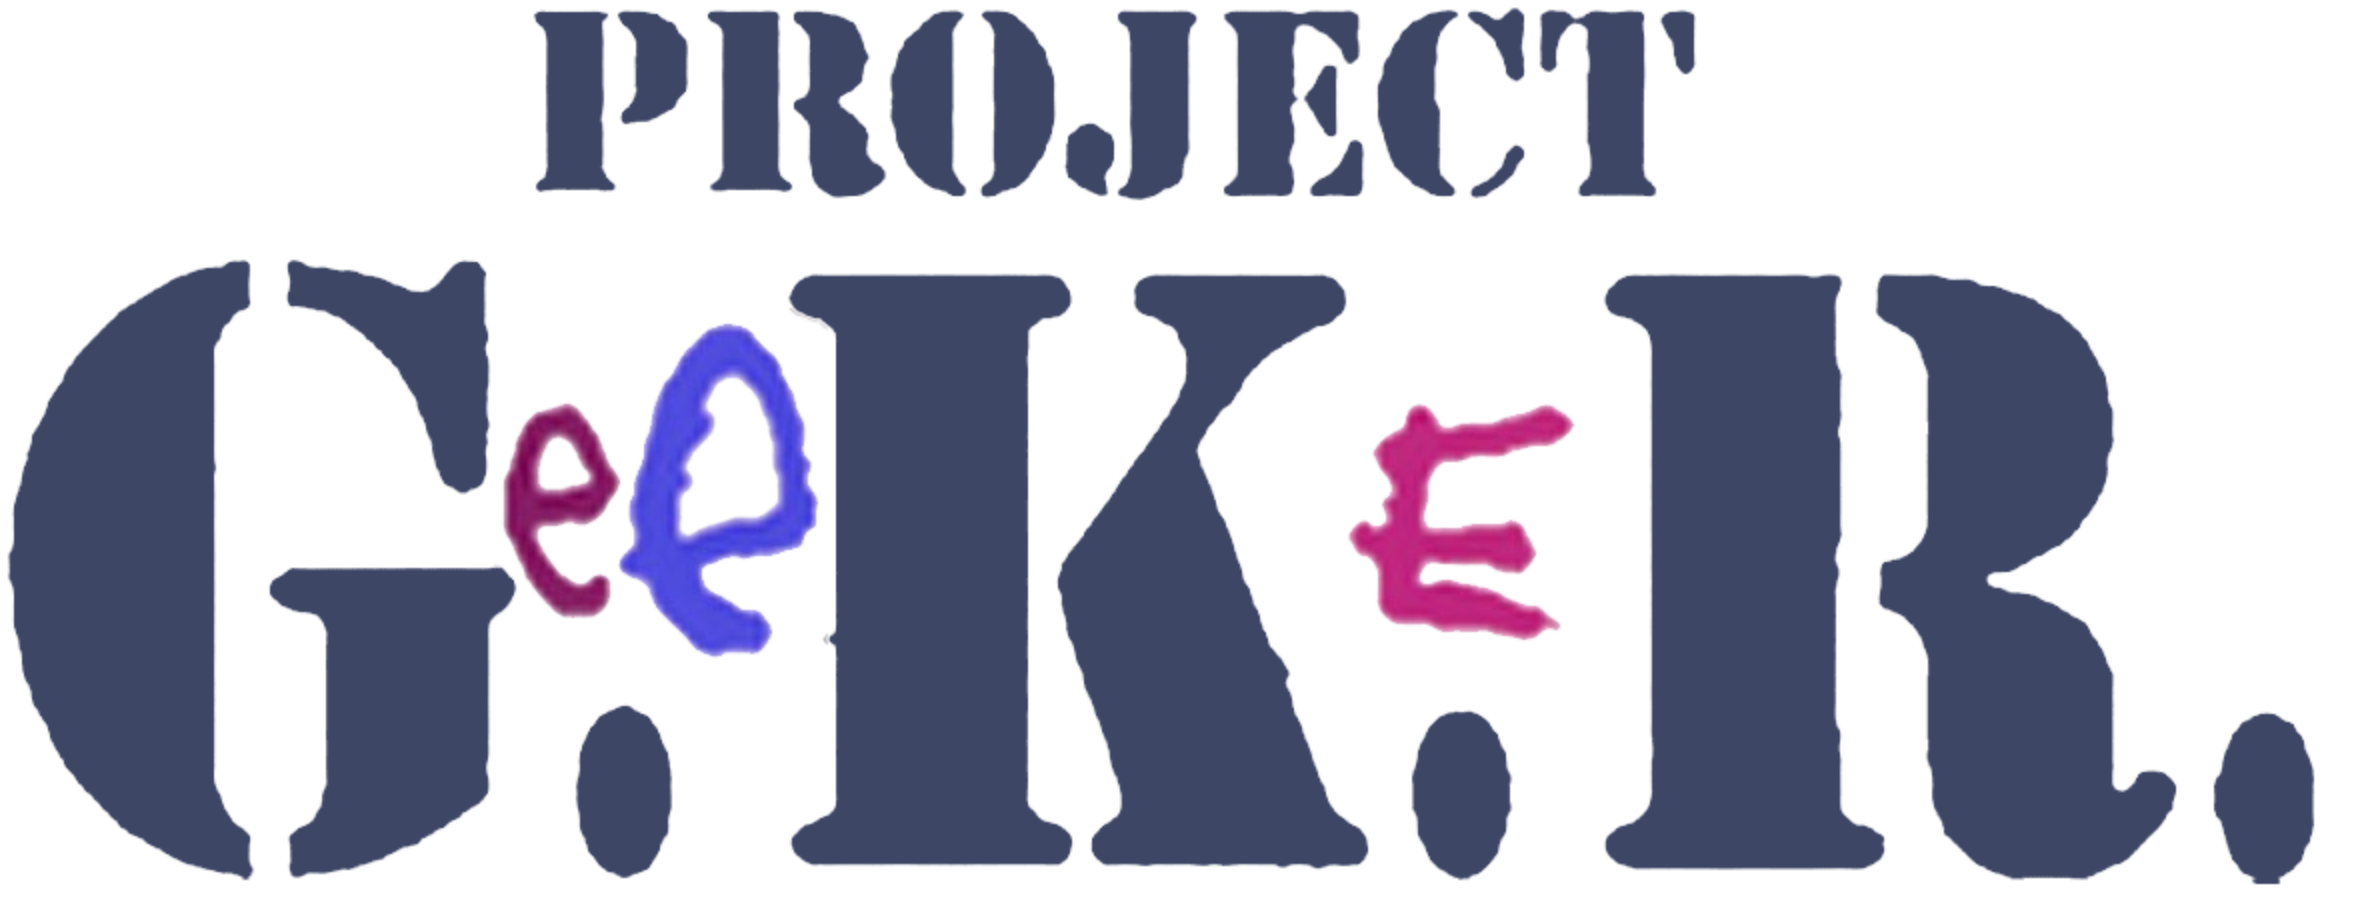 Project G.e.e.K.e.R (1 DVD Box Set)